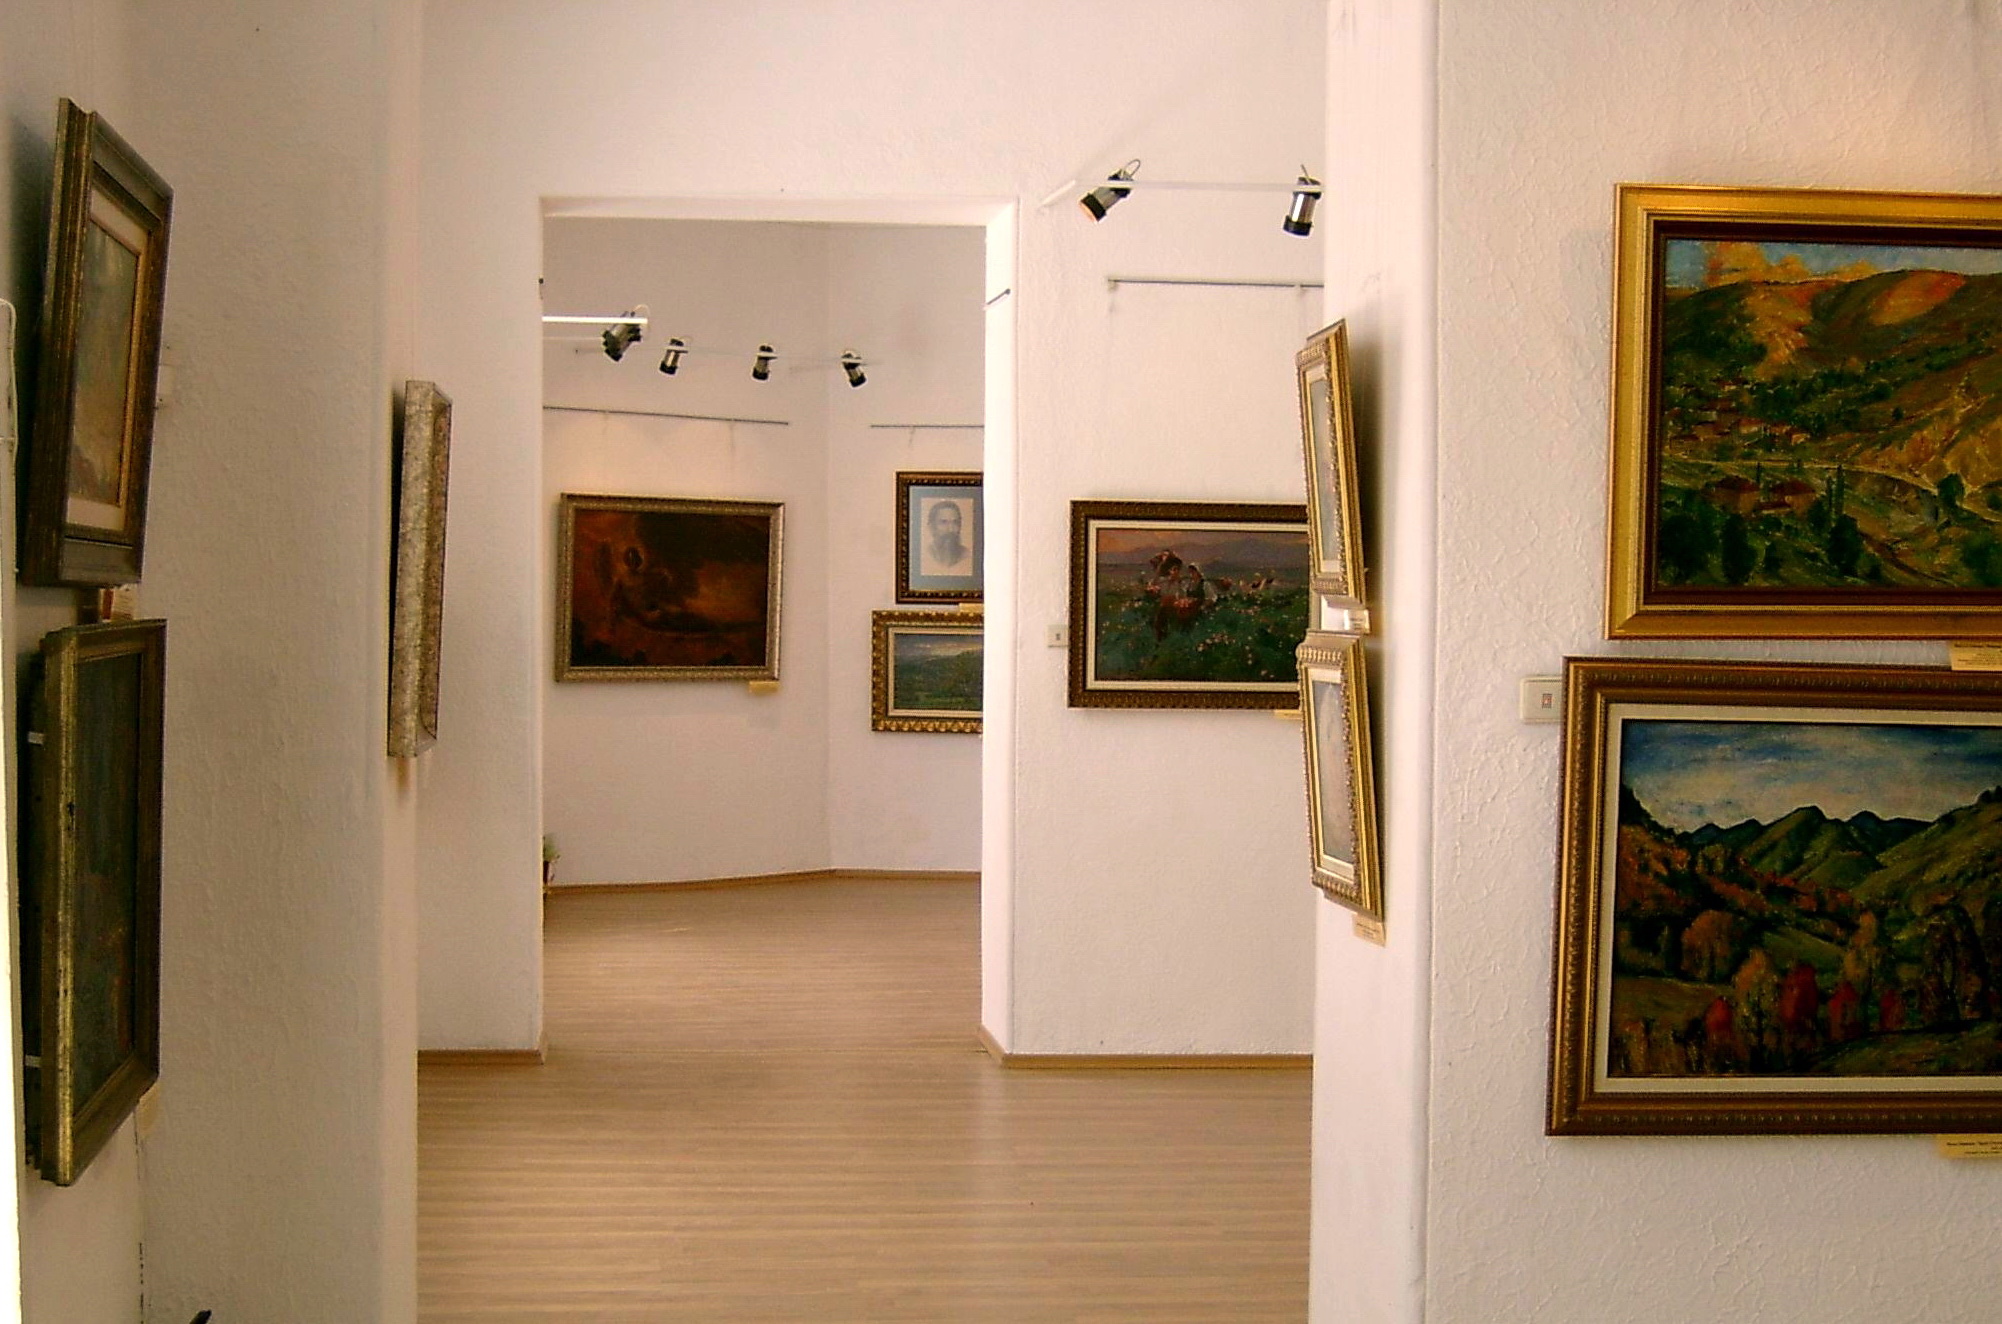 City Art Gallery - Temporary Exhibition Halls